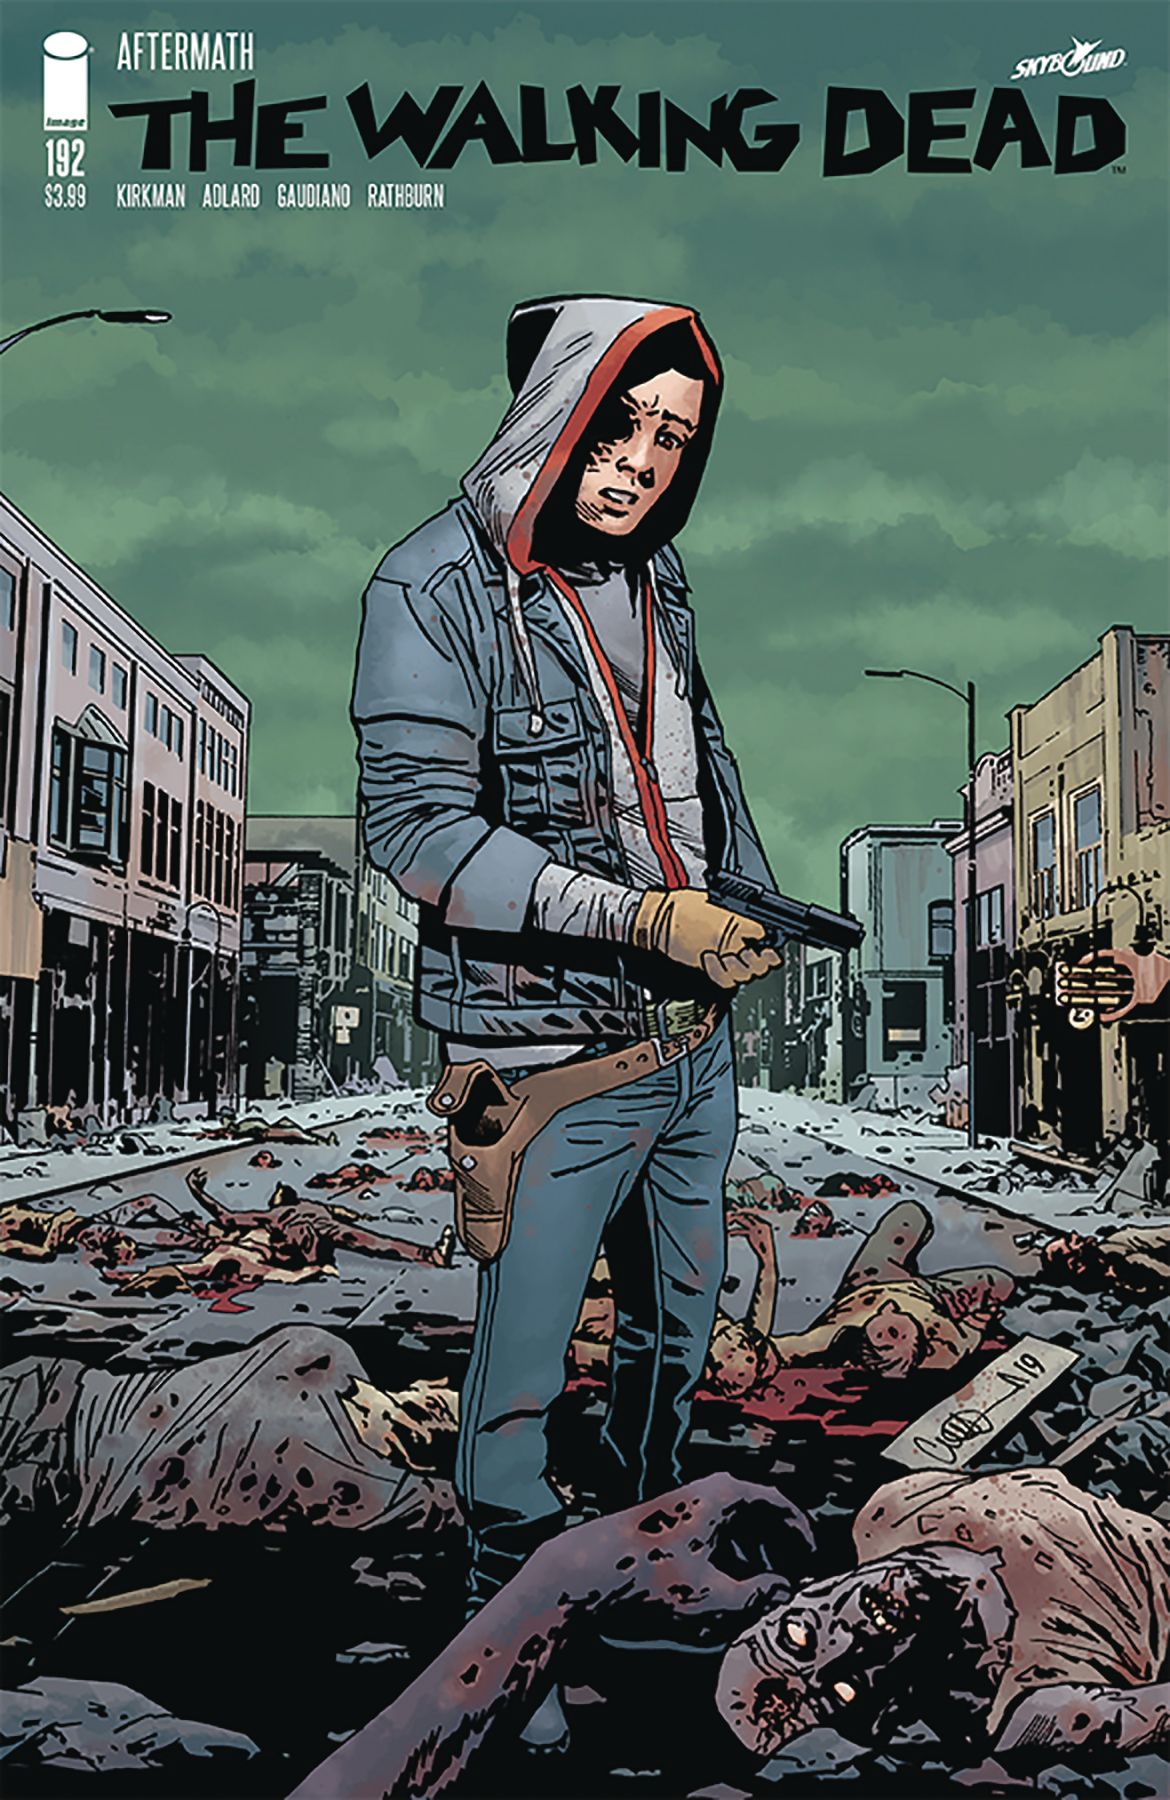 The Walking Dead #192 Comic